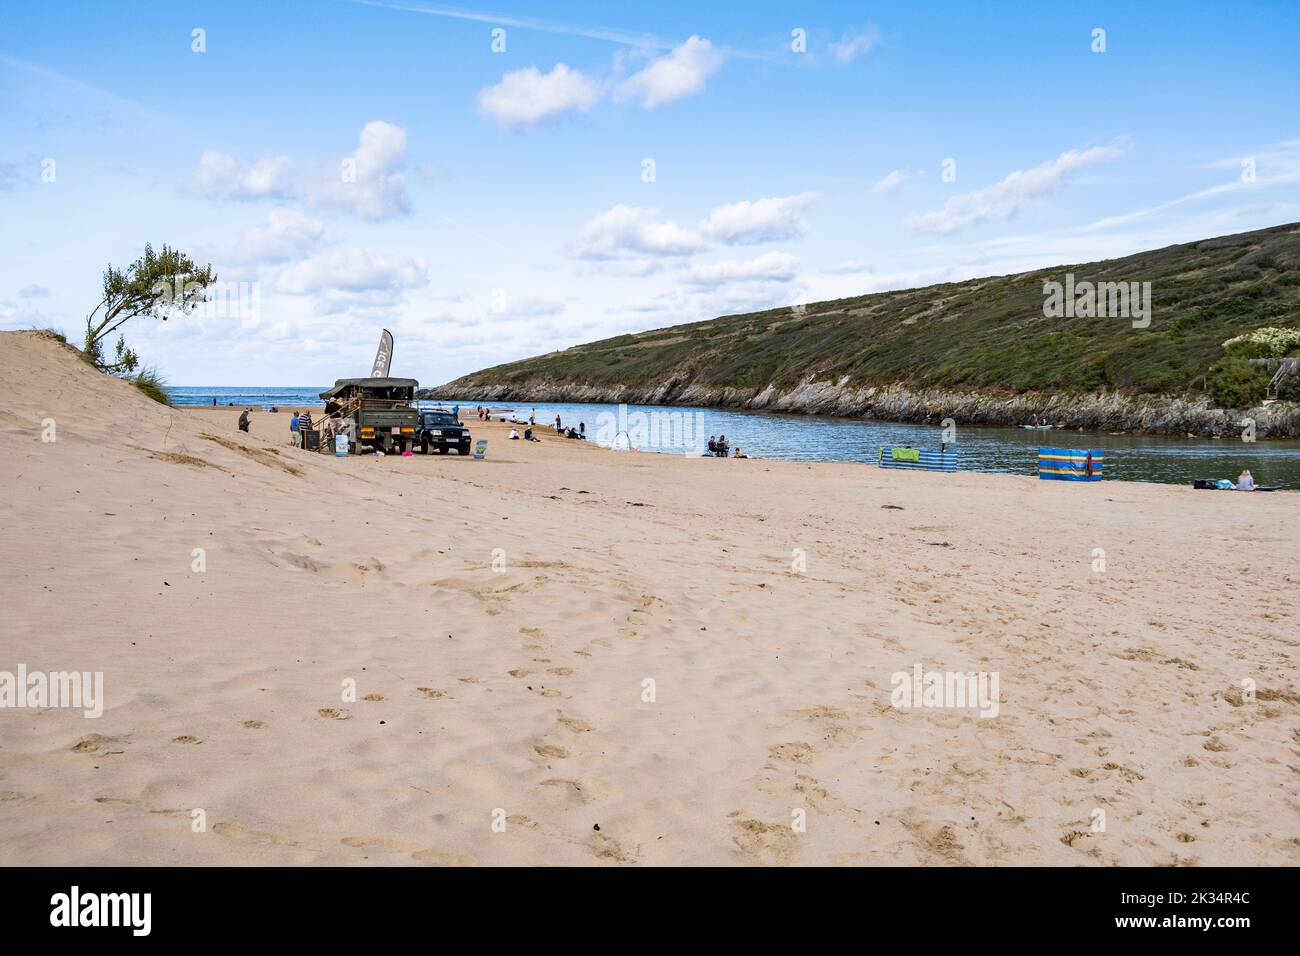 Plage de Crantock à Crantock sur la côte nord de Cornwall, Angleterre un lieu de vacances populaire. Banque D'Images